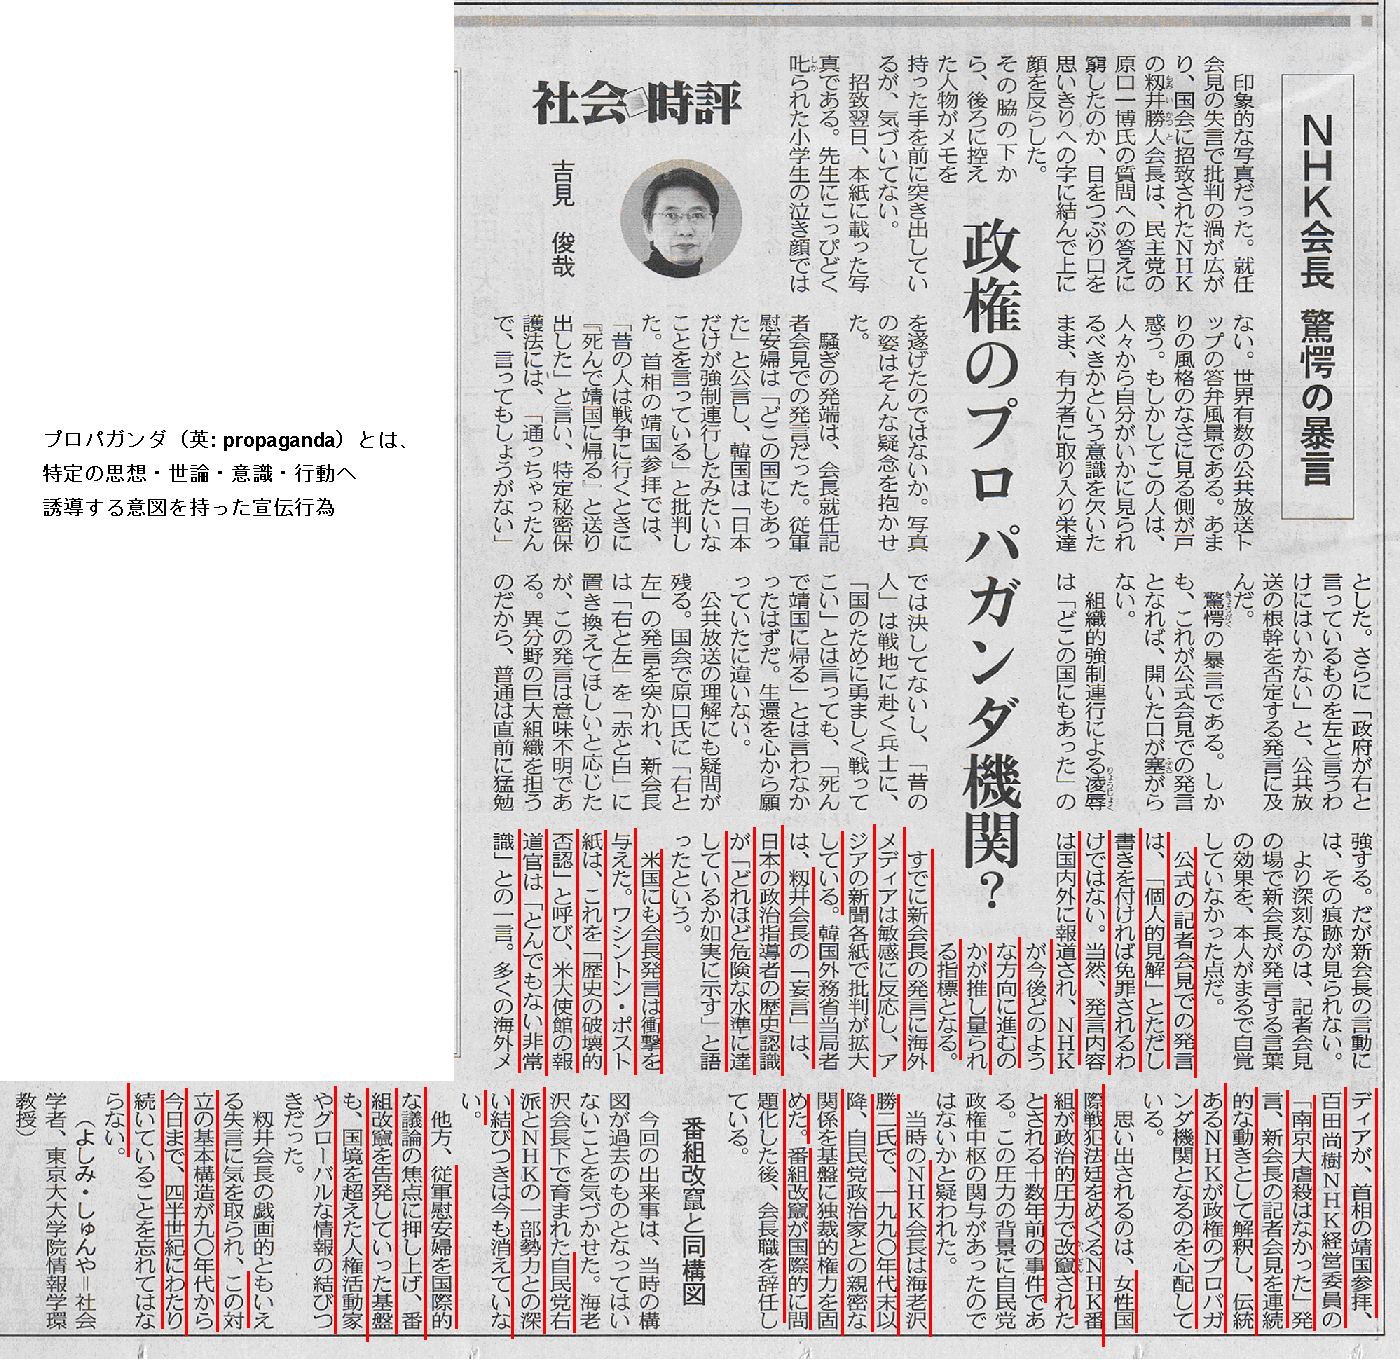 20140219東京NHK会長発言批判_t_s